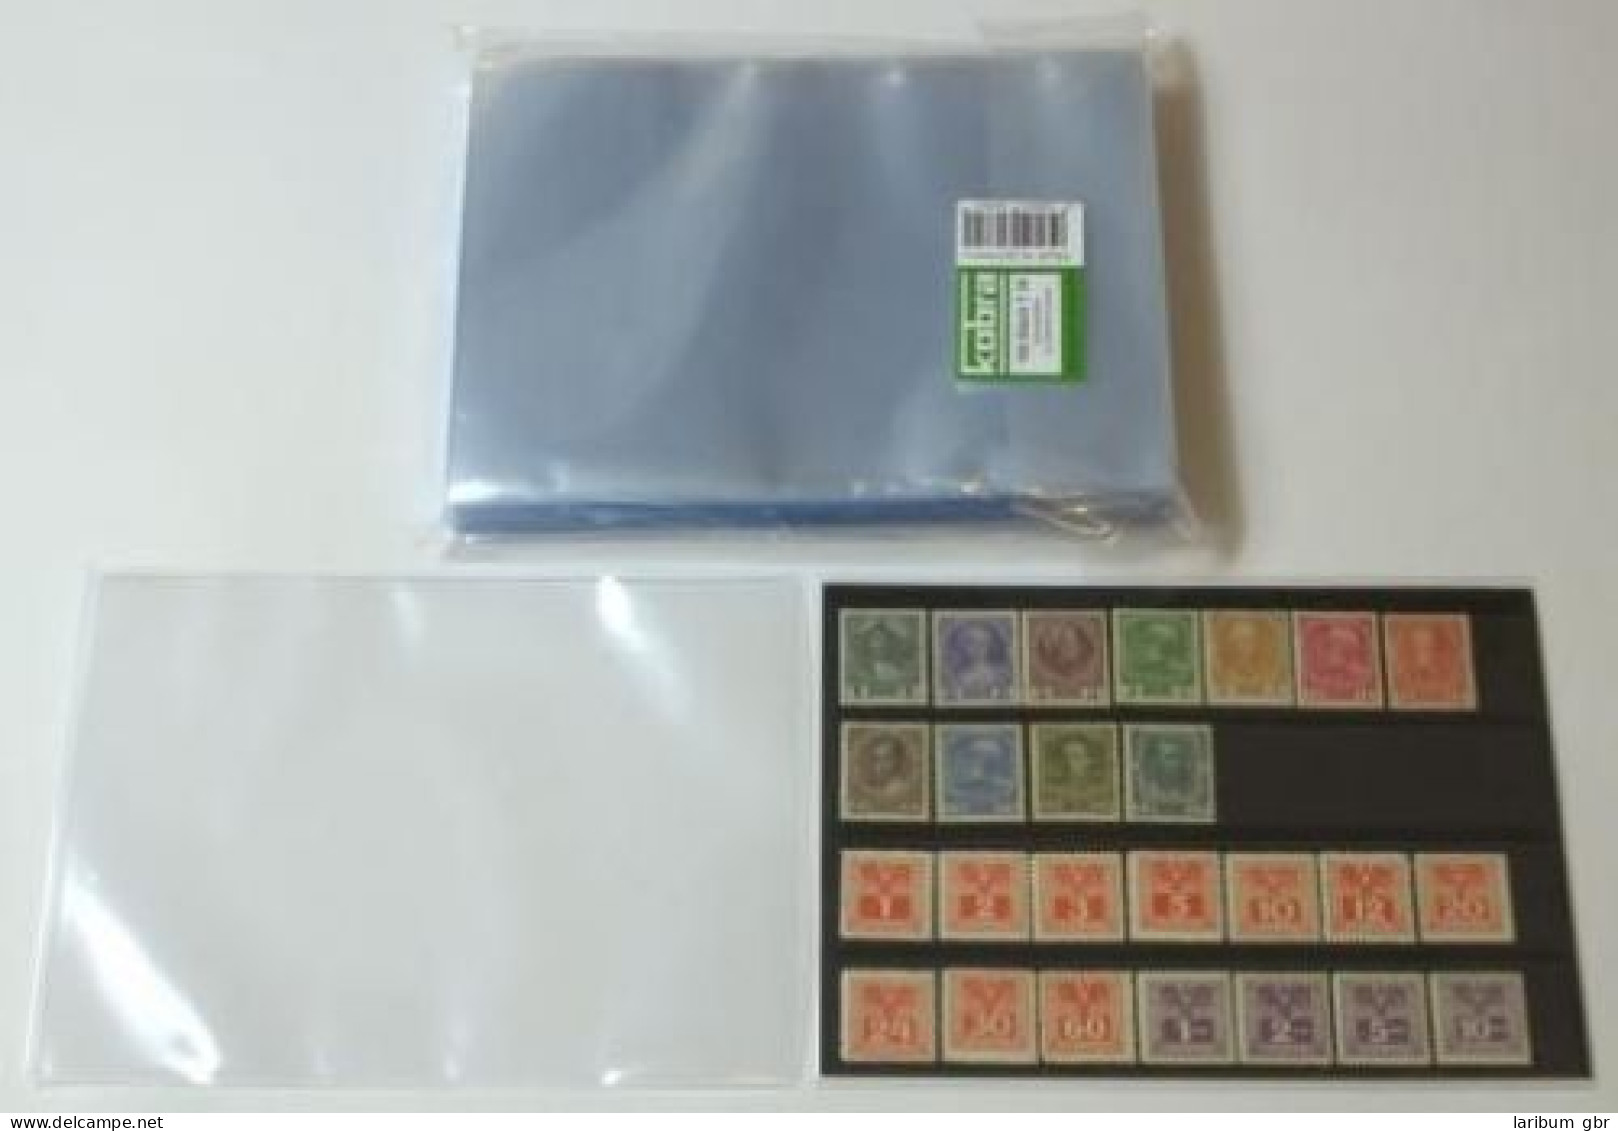 KOBRA T36 Schutzhüllen: Briefhüllen 148 X 210 Mm (100 Stück) #K-T36 - Clear Sleeves